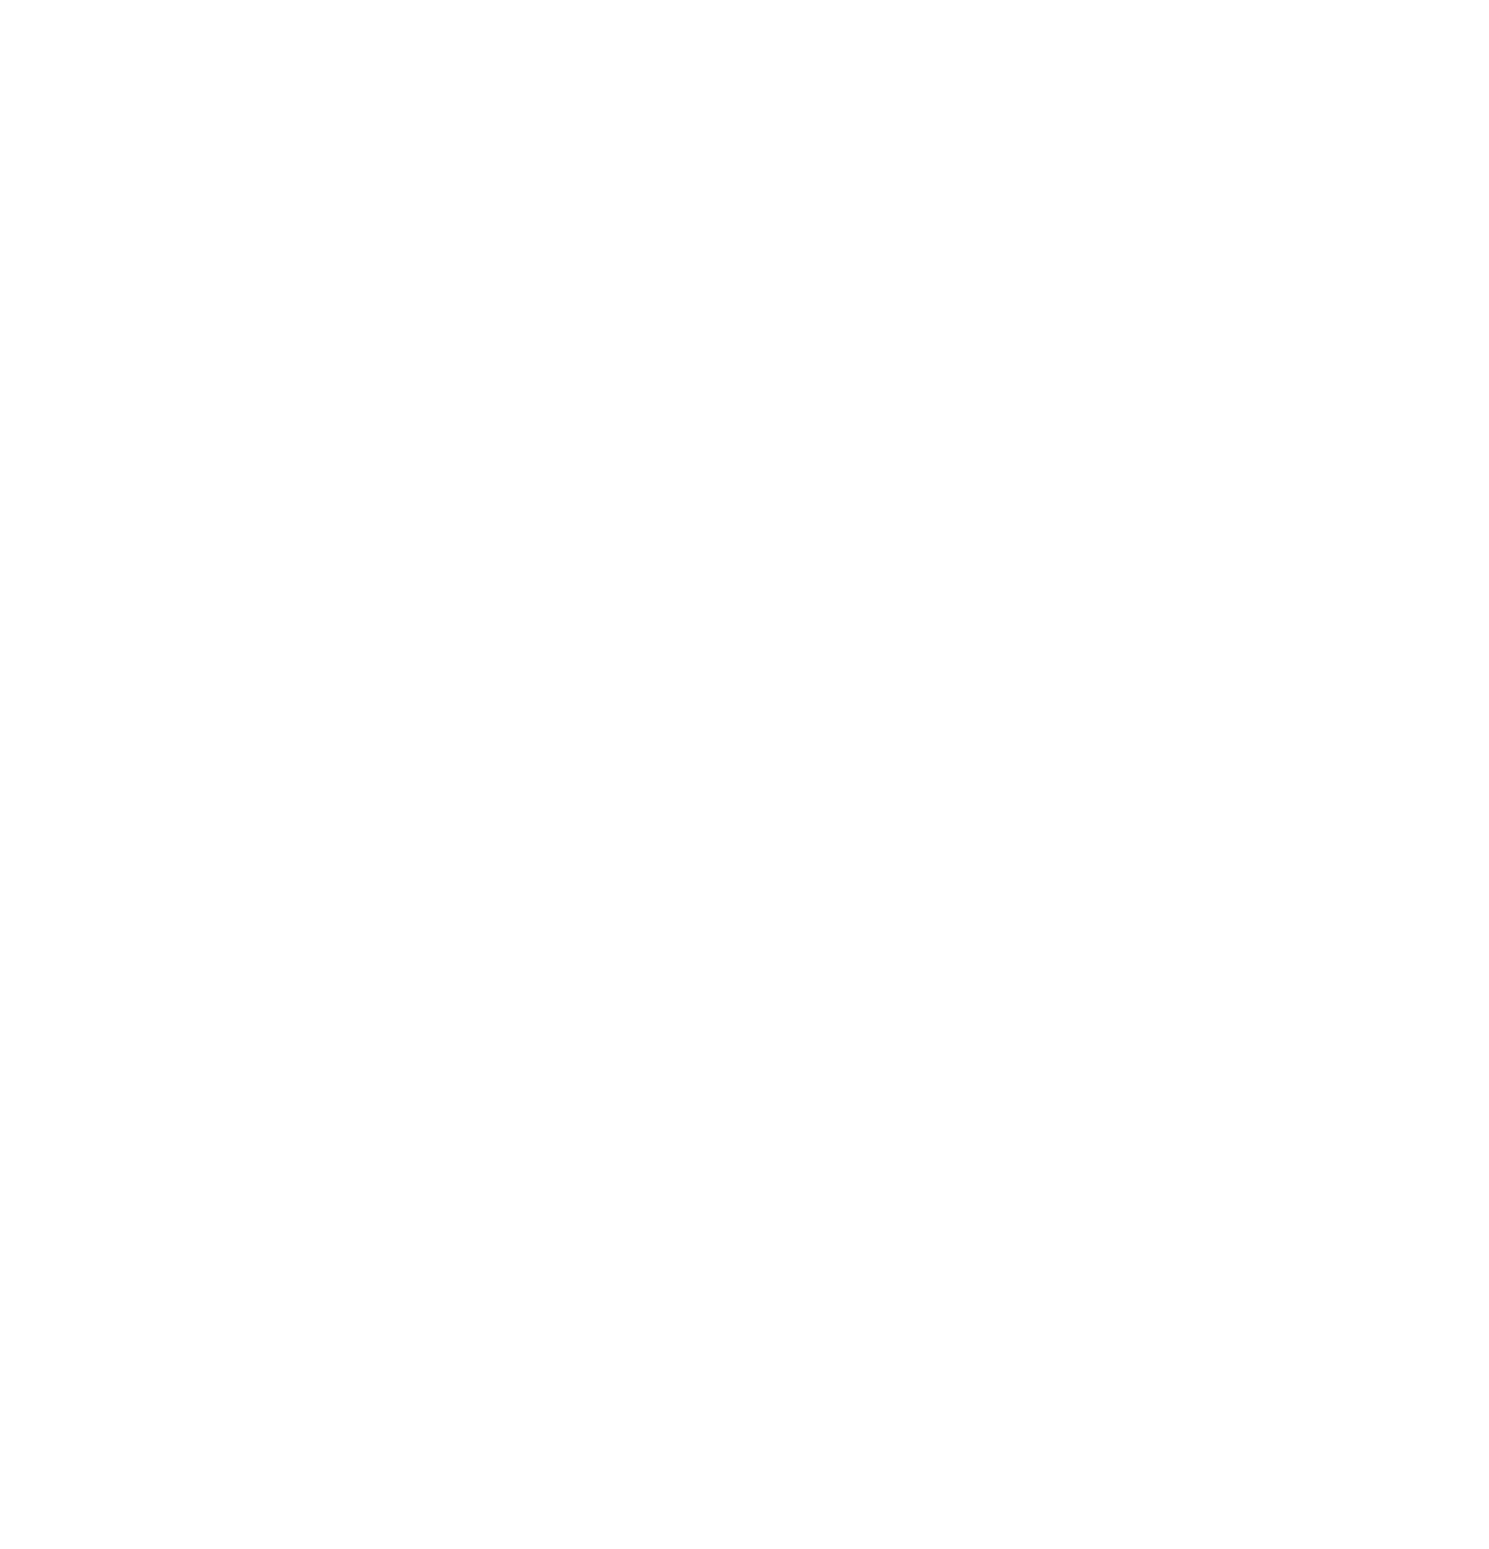 Enerflex logo for dark backgrounds (transparent PNG)